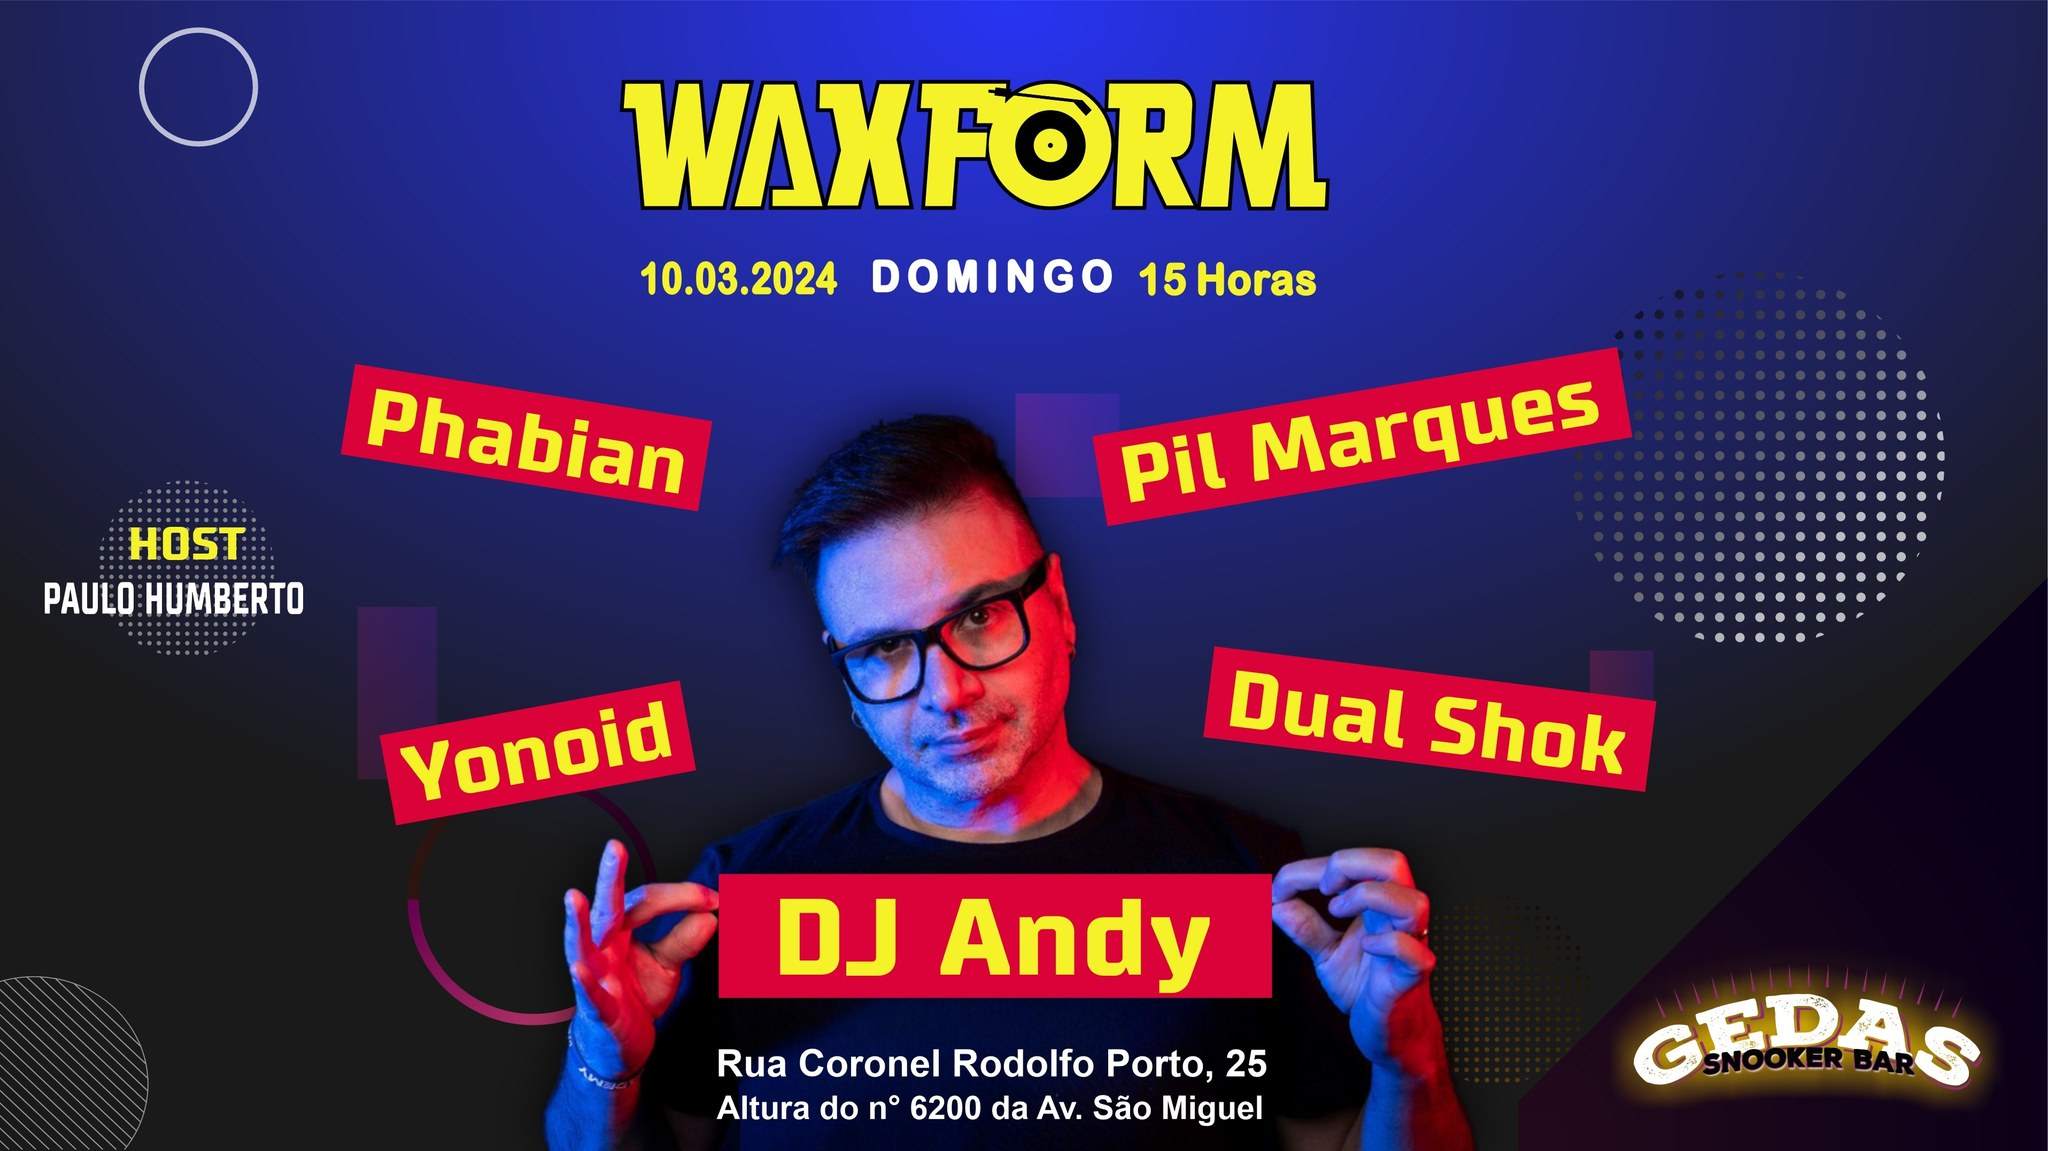 WAXFORM com DJ Andy + Pil Marques - Página frontal